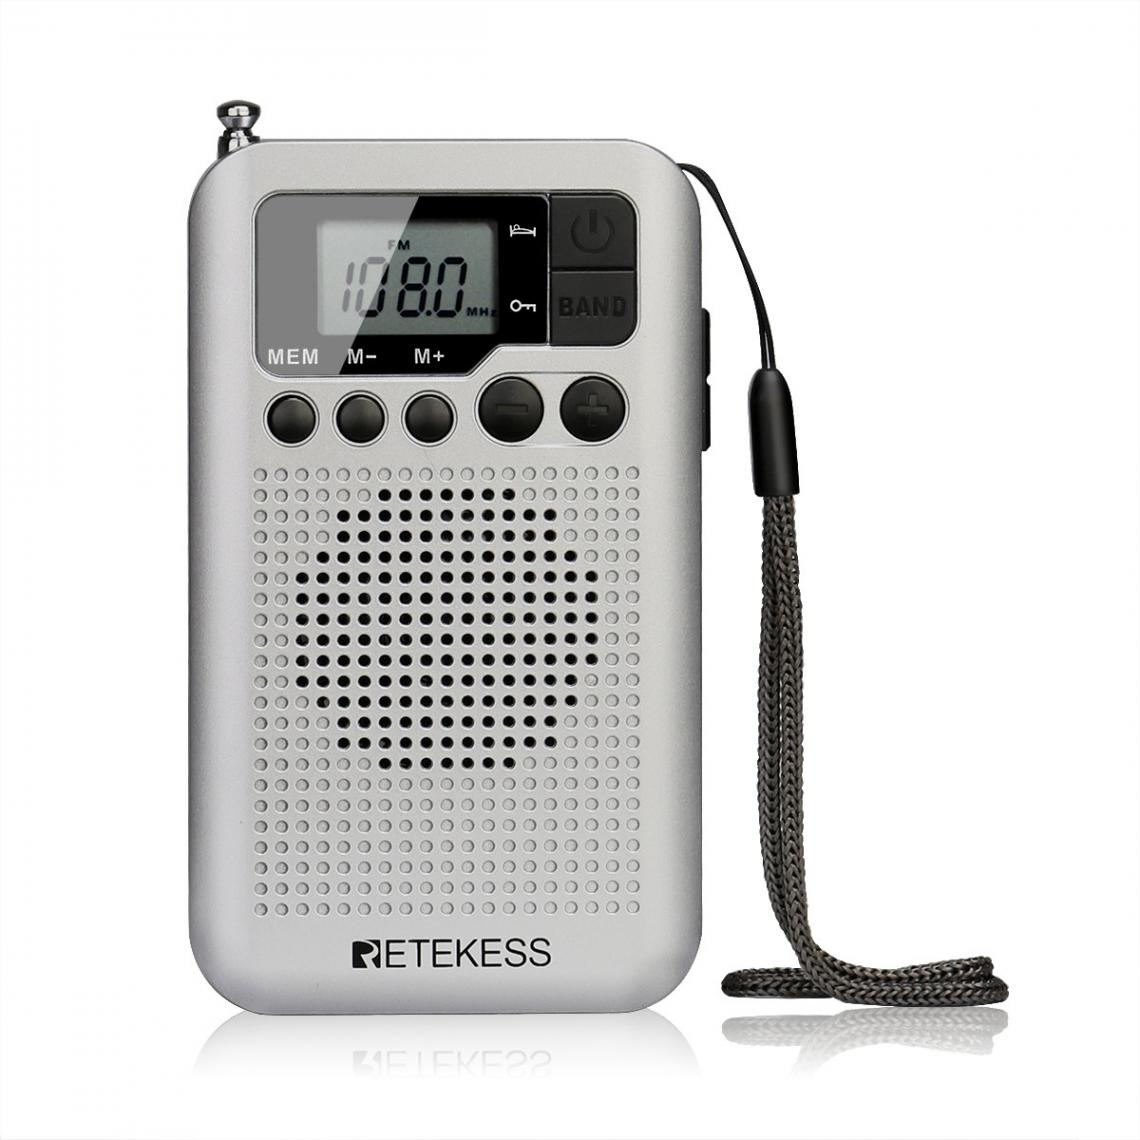 Universal - Radio FM/AM portative avec écran LCD, haut-parleur réglé numériquement, prise casque et support horloge - Radio